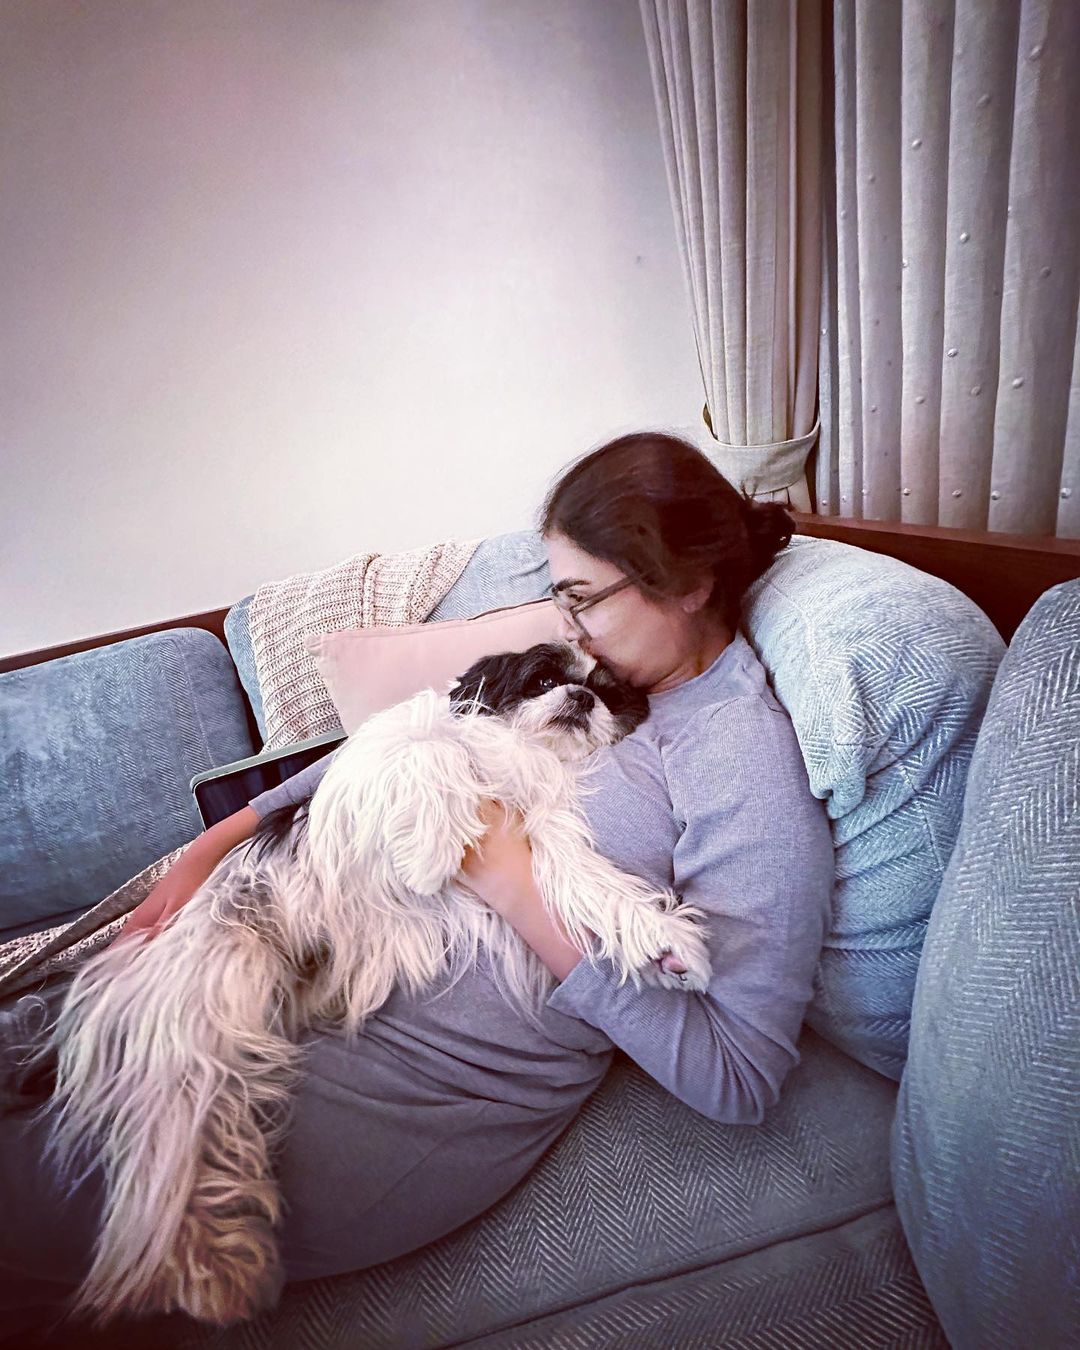 Nazriya Nazim Fahadh Celebrating Her Dog Birthday with family